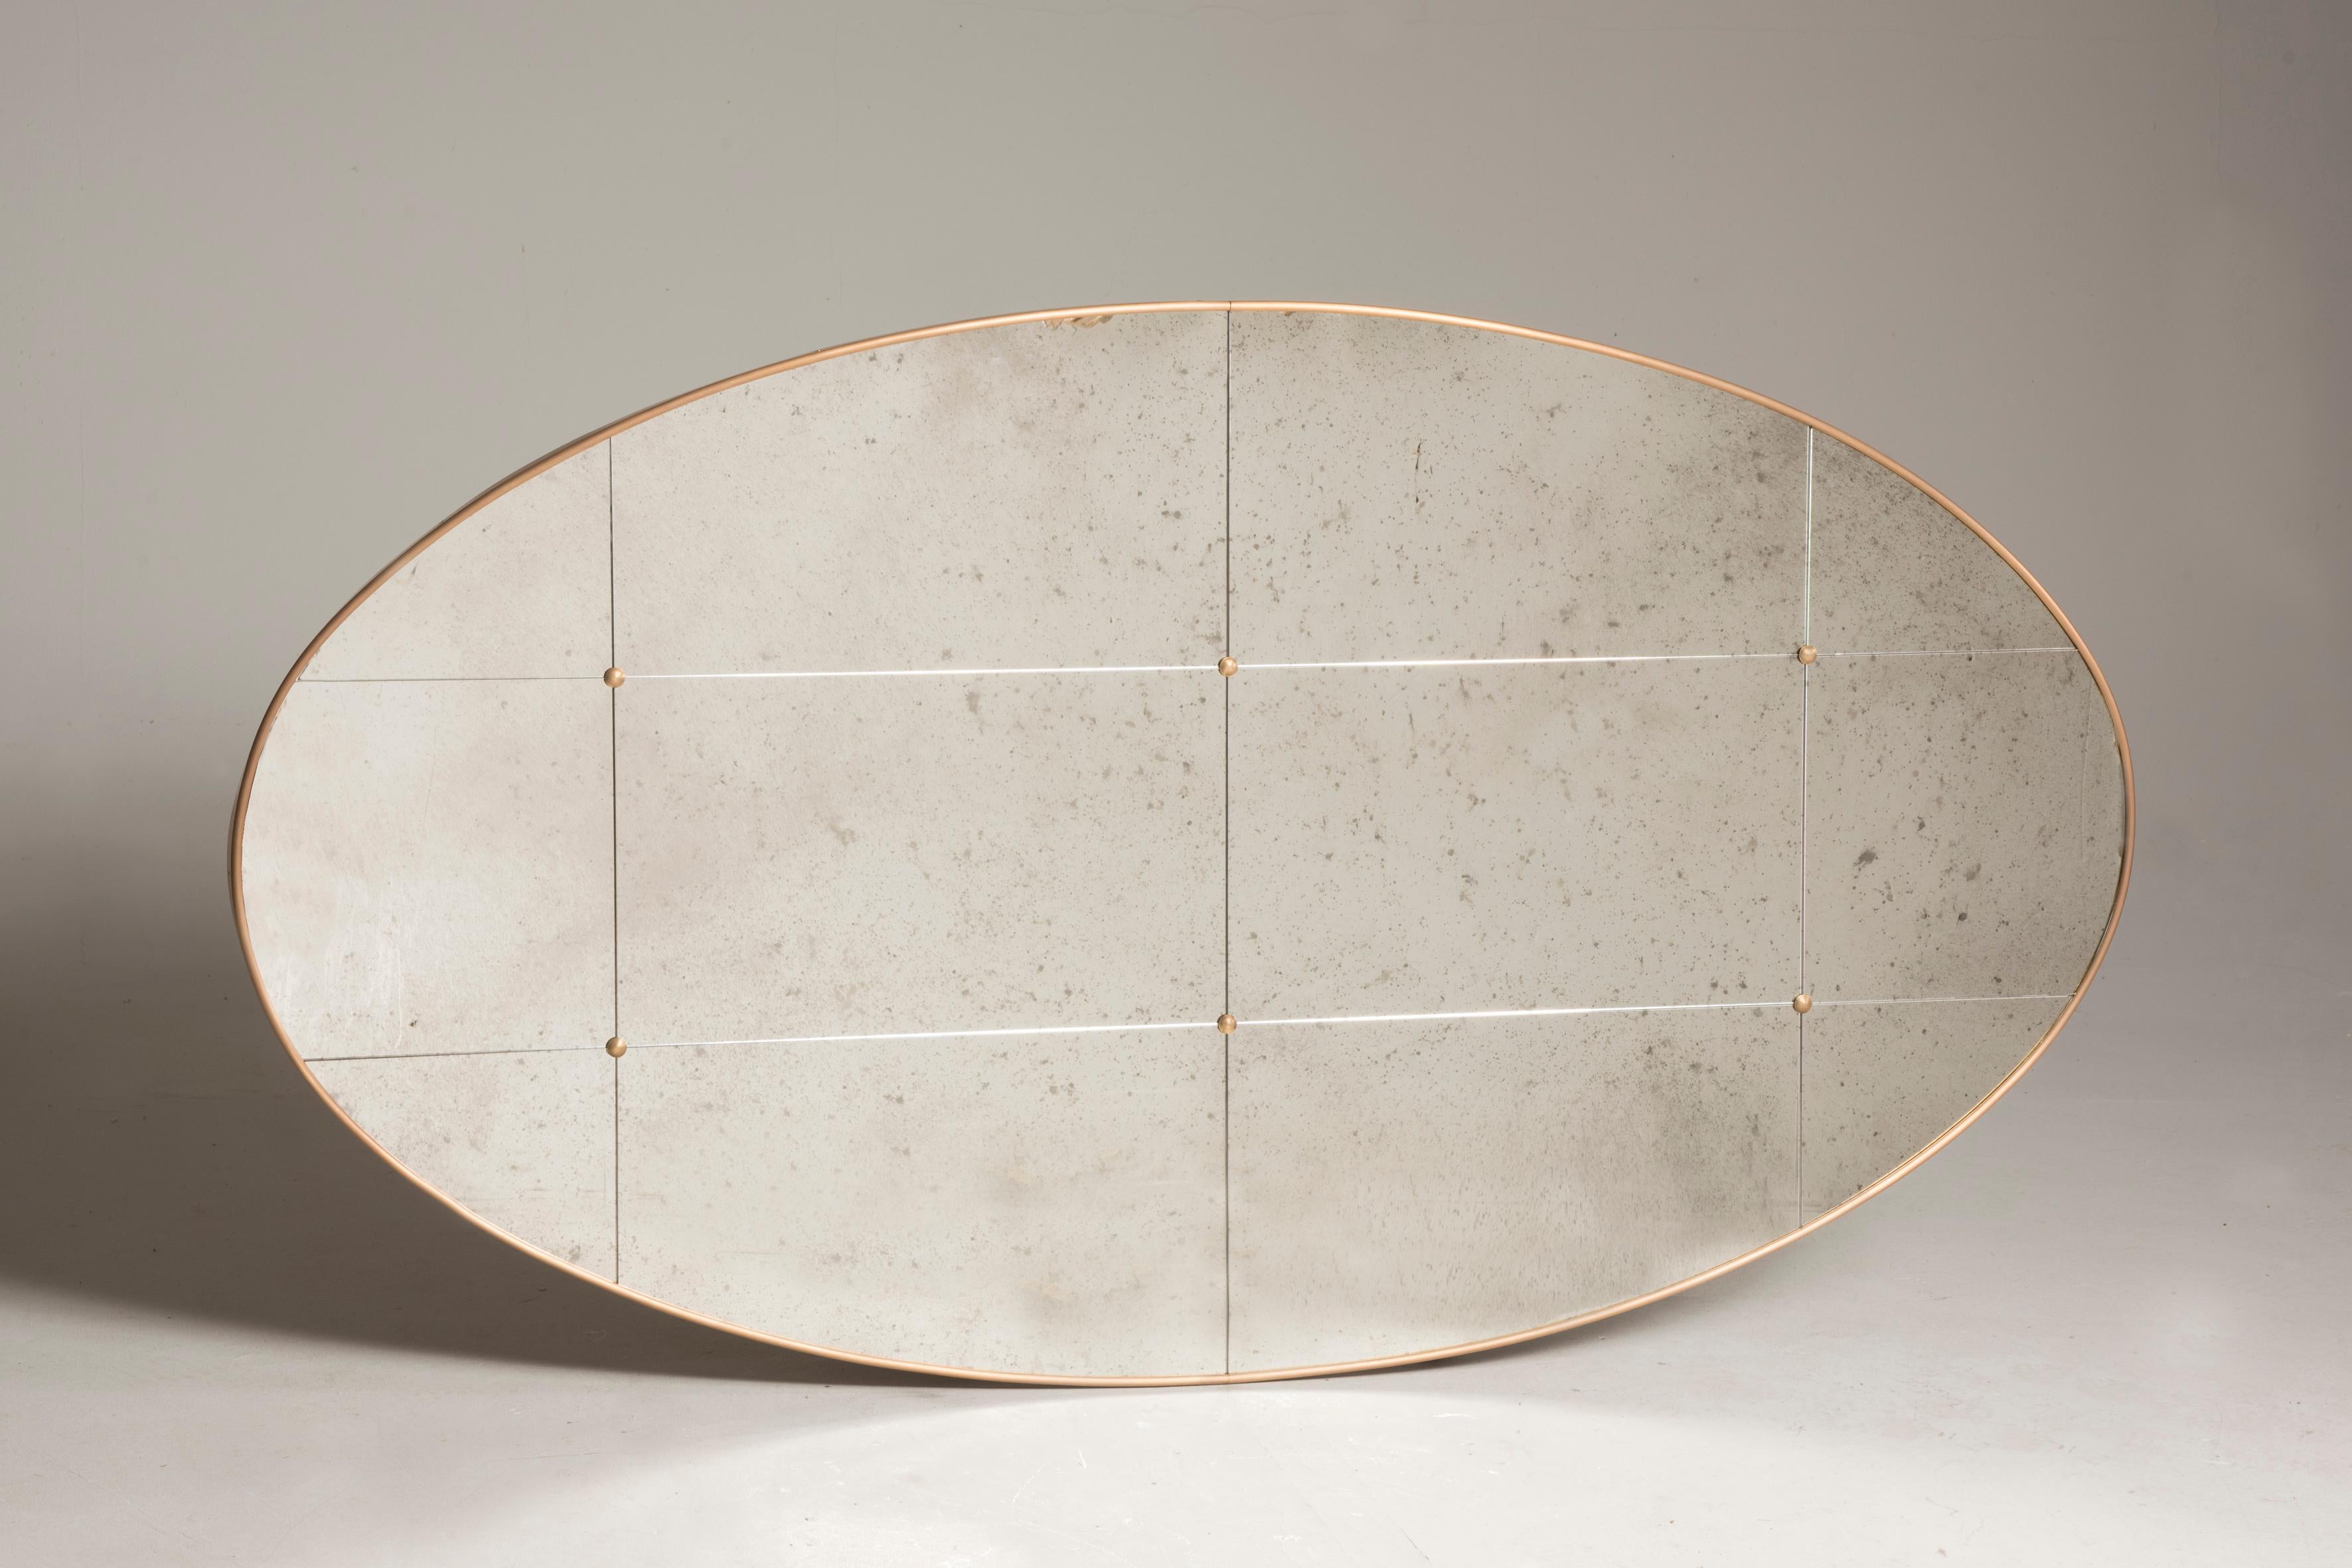 Pescetta présente sa collection de miroirs contemporains personnalisables. Avec leur cadre en laiton, leur aspect de vitre et leurs clous en laiton, ces miroirs reproduisent l'idée des miroirs de style Art déco du début du XXe siècle. Ils